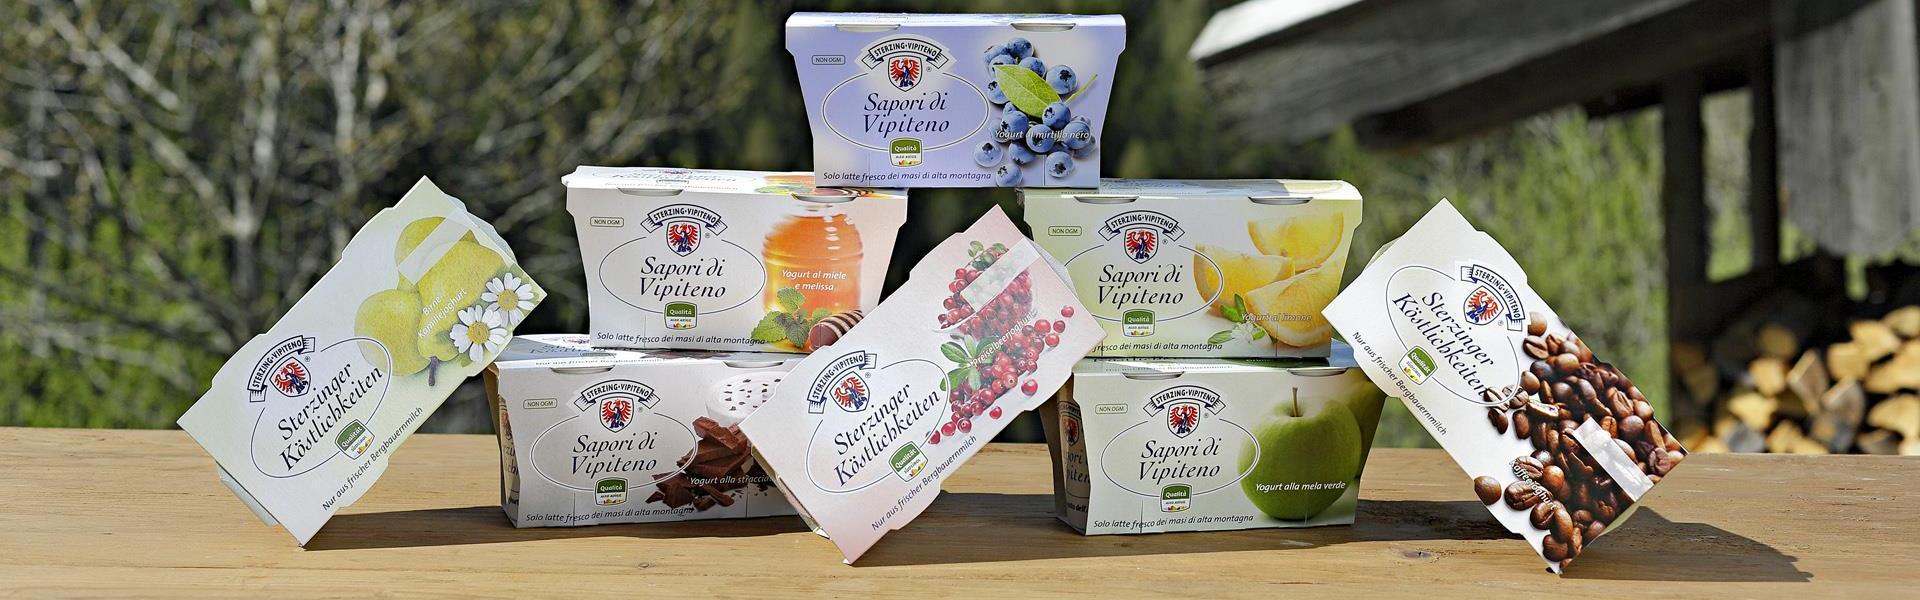 Yogurt Vipiteno - Scopri la bontà dell'agricoltura in Alto Adige